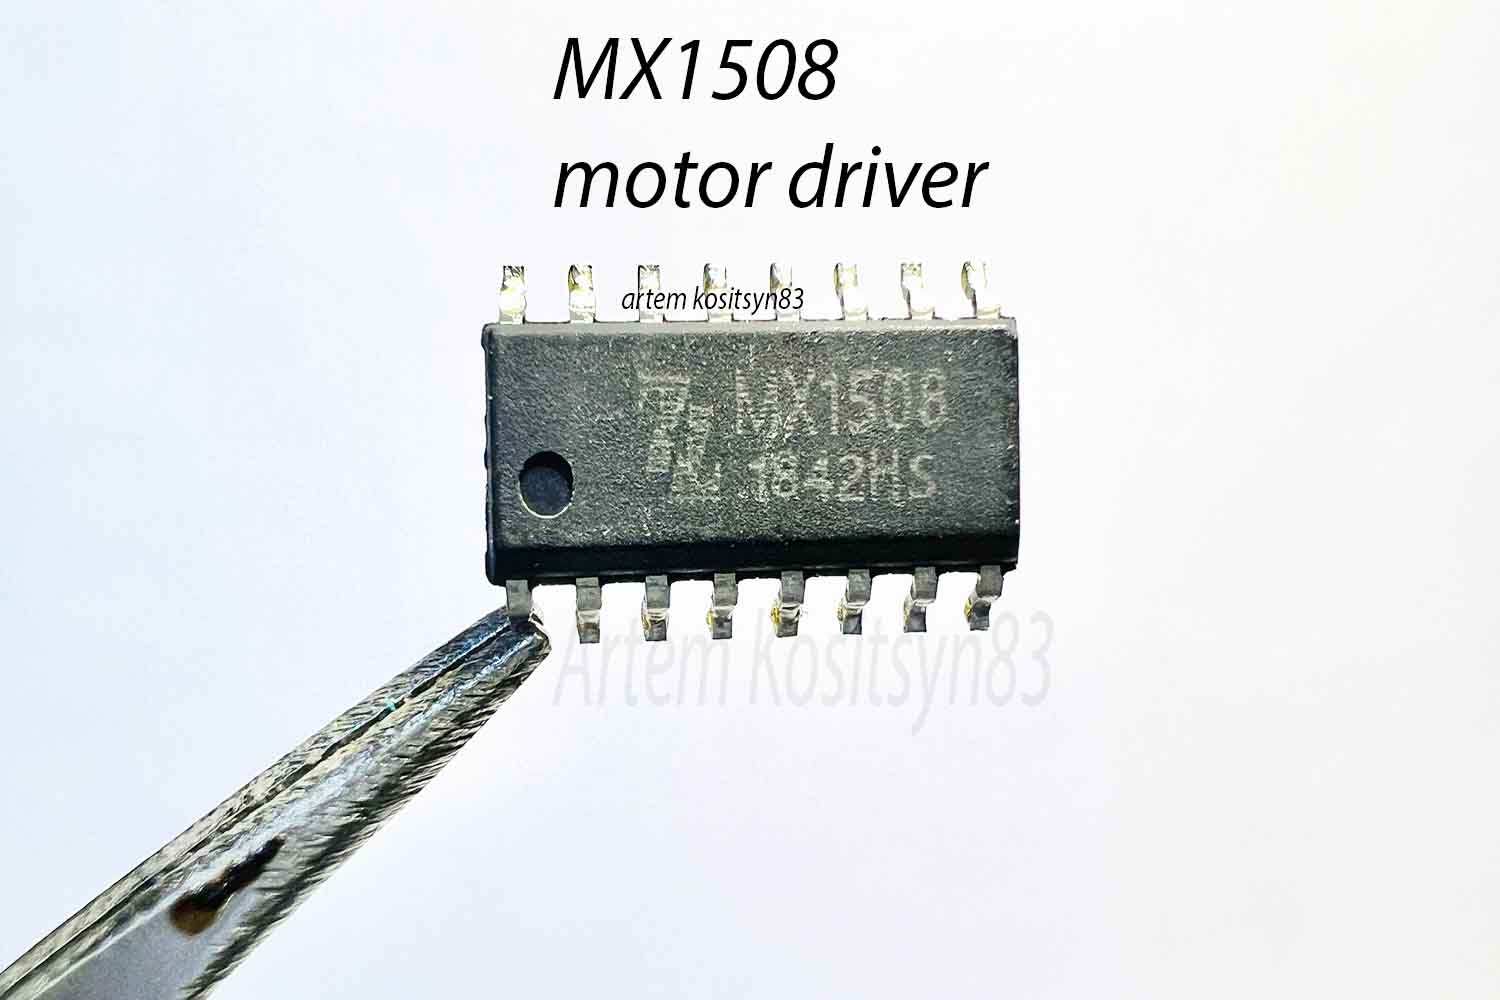 Подробнее о статье MX1508.Motor driver